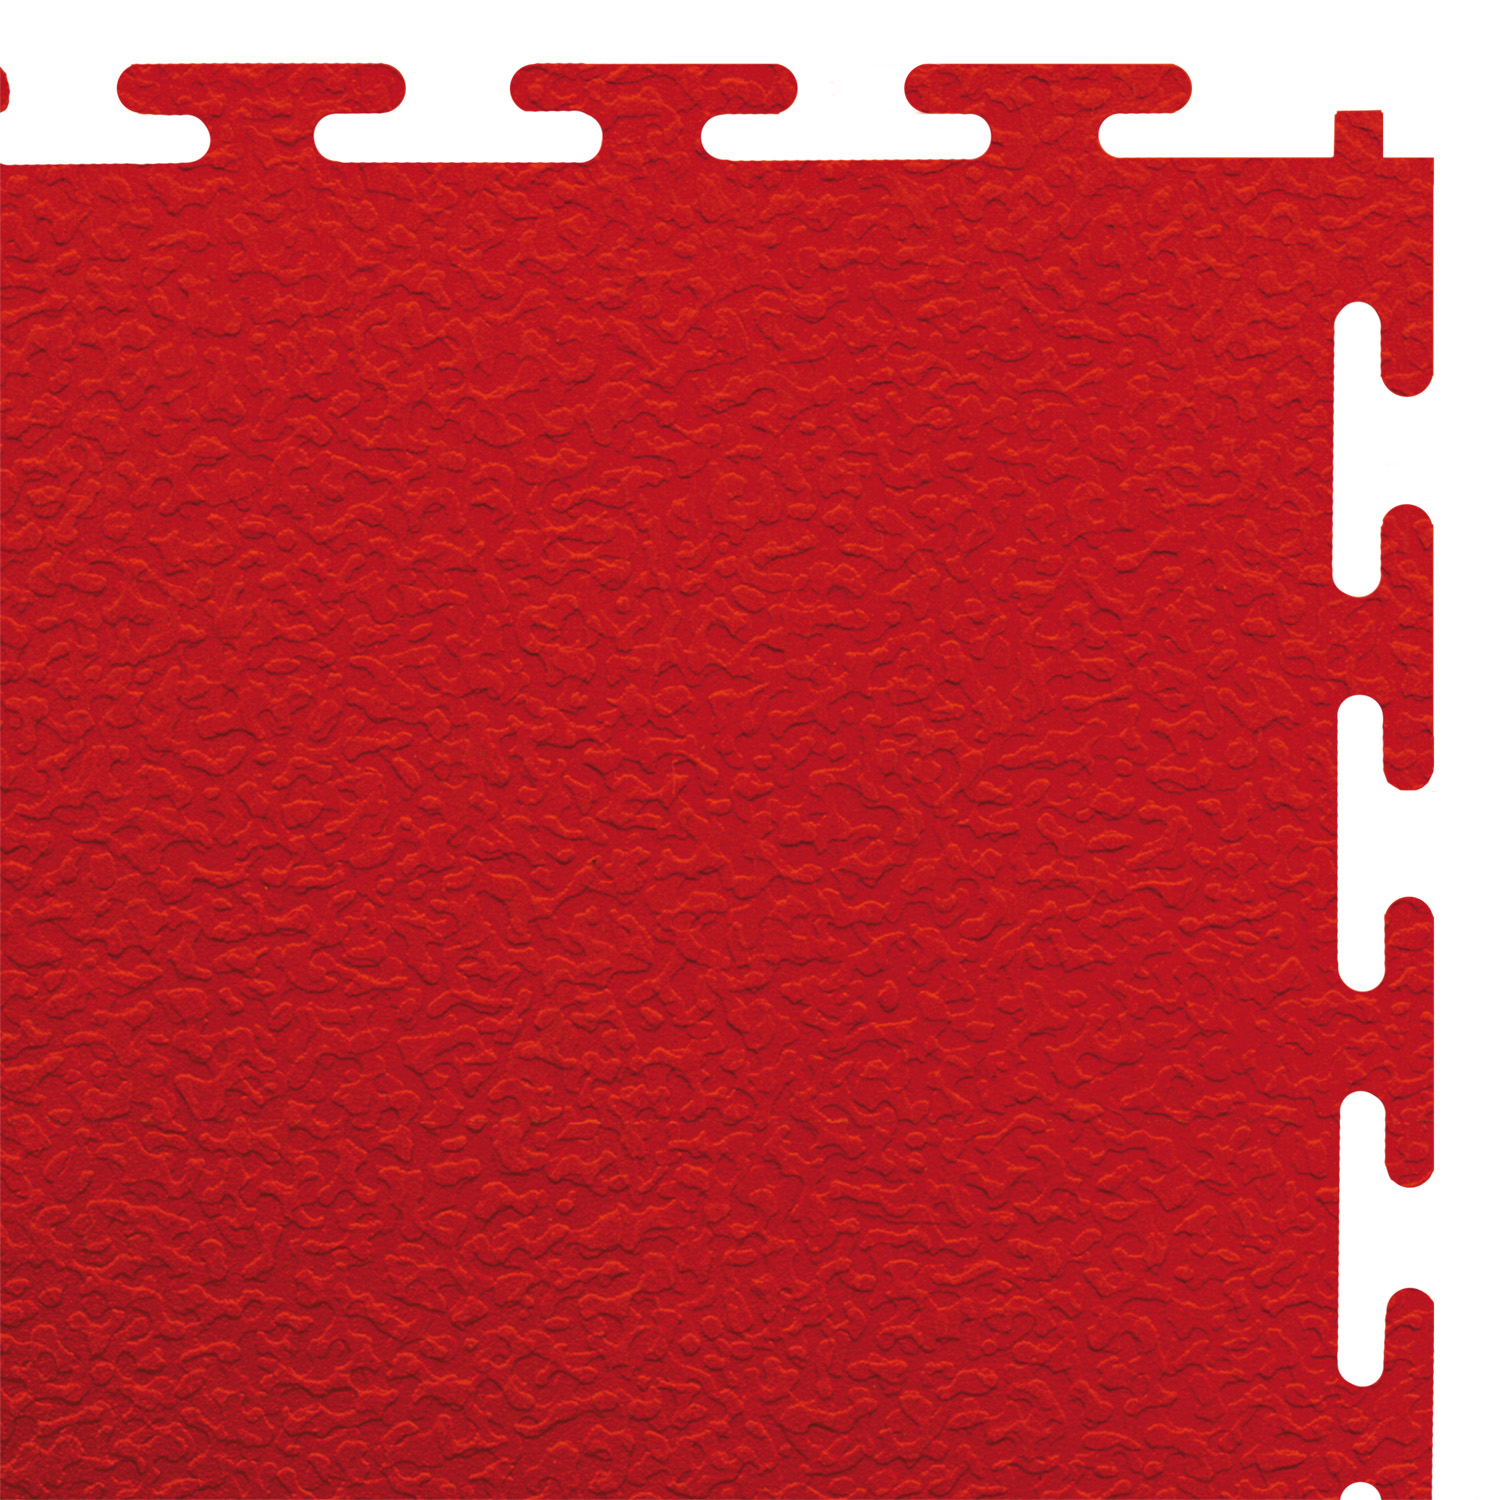 Heavy-duty floor tile (red/textured)